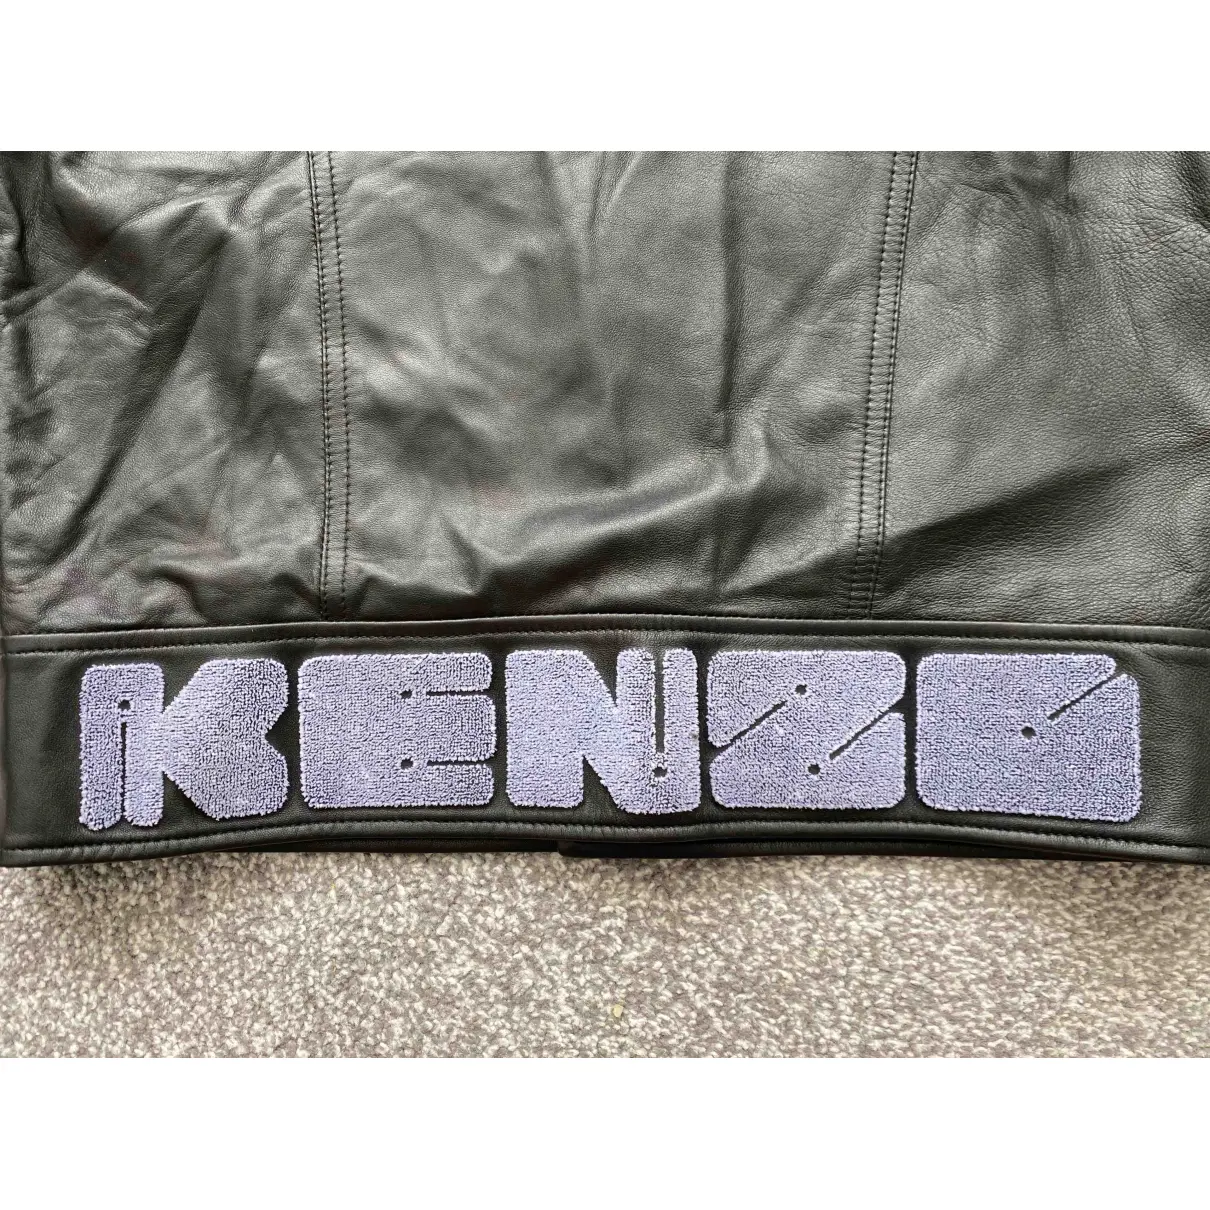 Leather jacket Kenzo